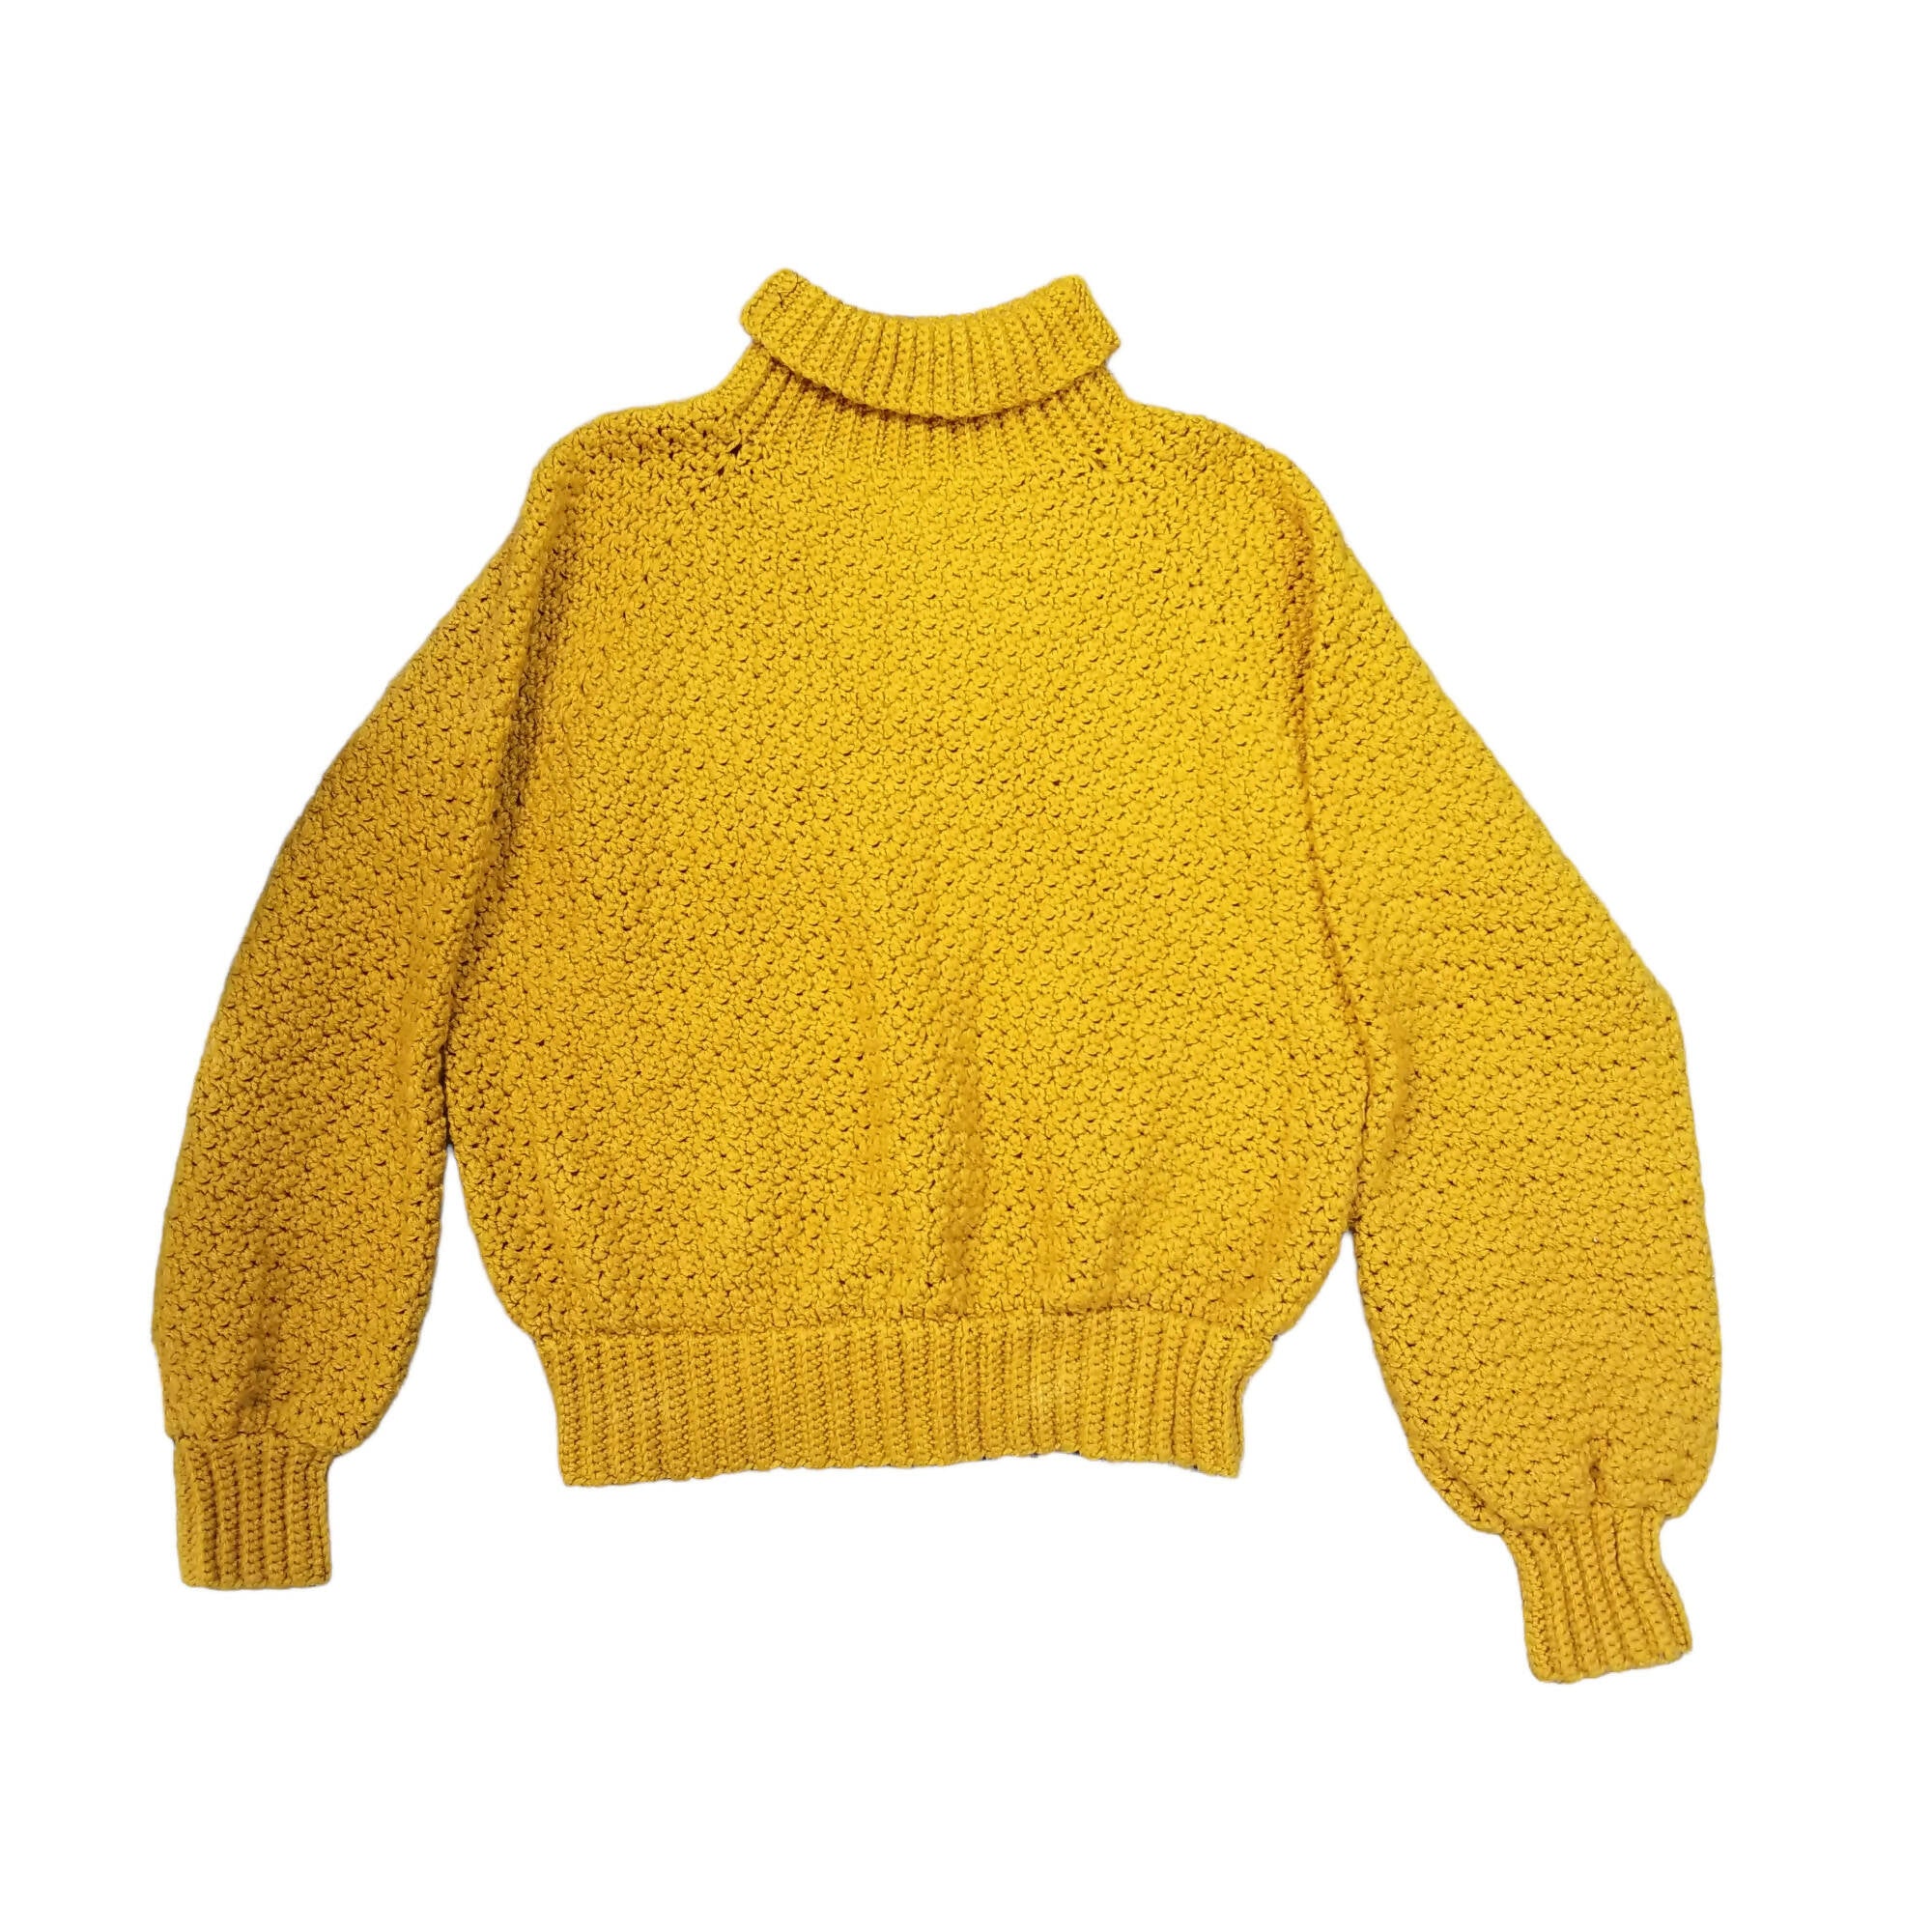 Yellow crochet sweater